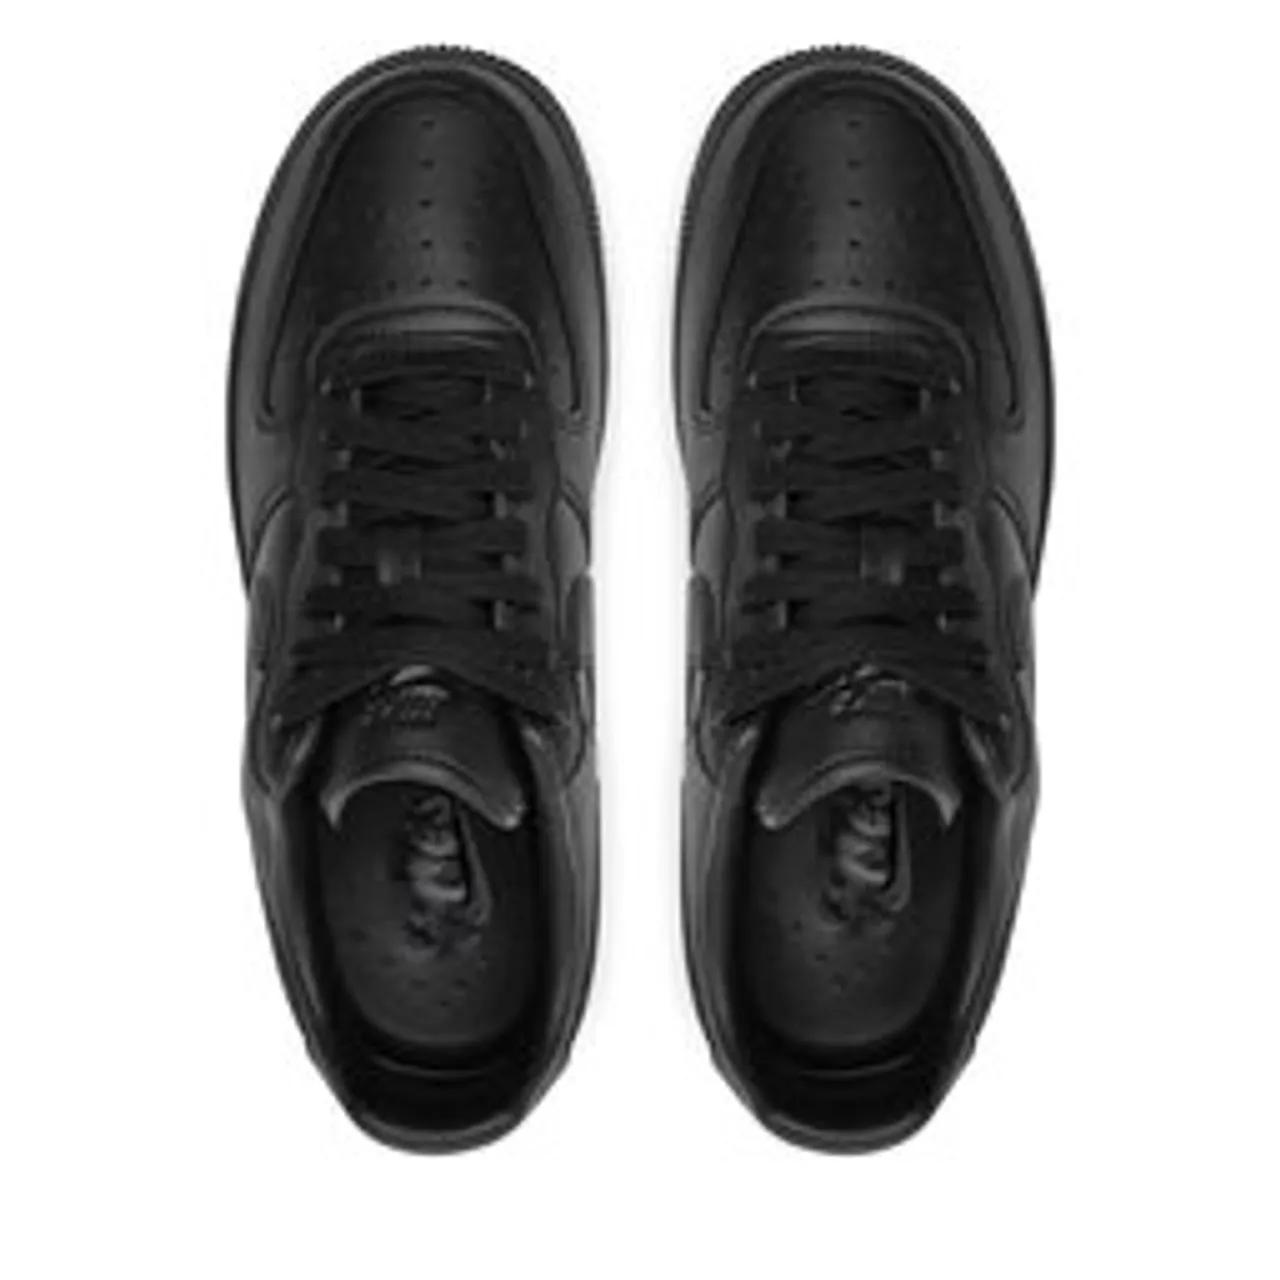 Sneakers Nike Air Force 1 '07 Fresh DM0211 001 Schwarz